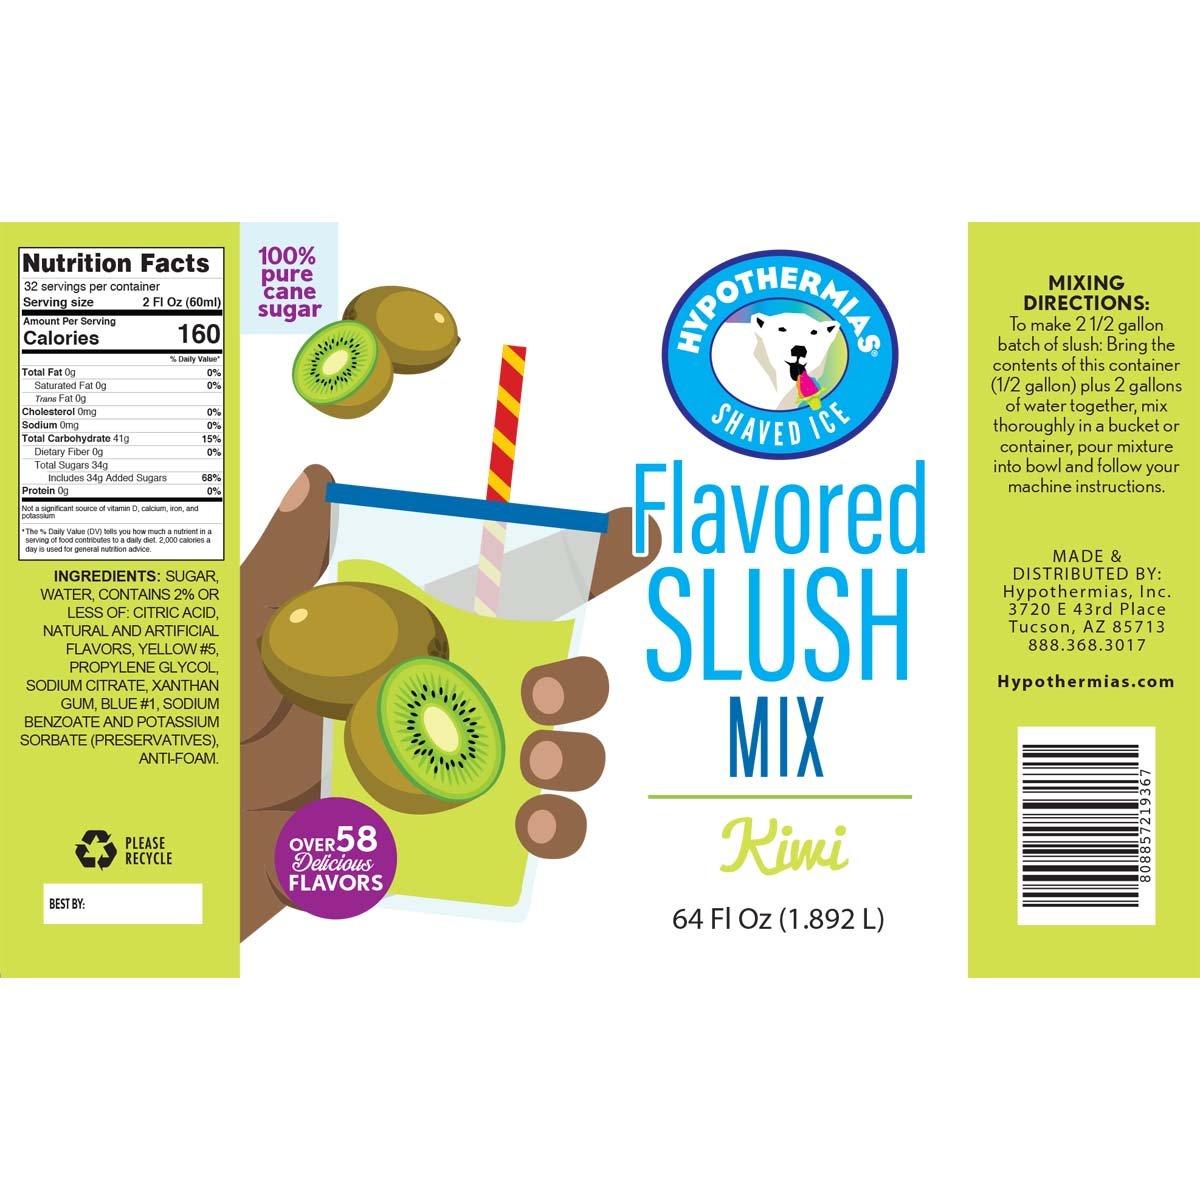 Hypothermias Kiwi Frozen Slush Base Ingredients Label